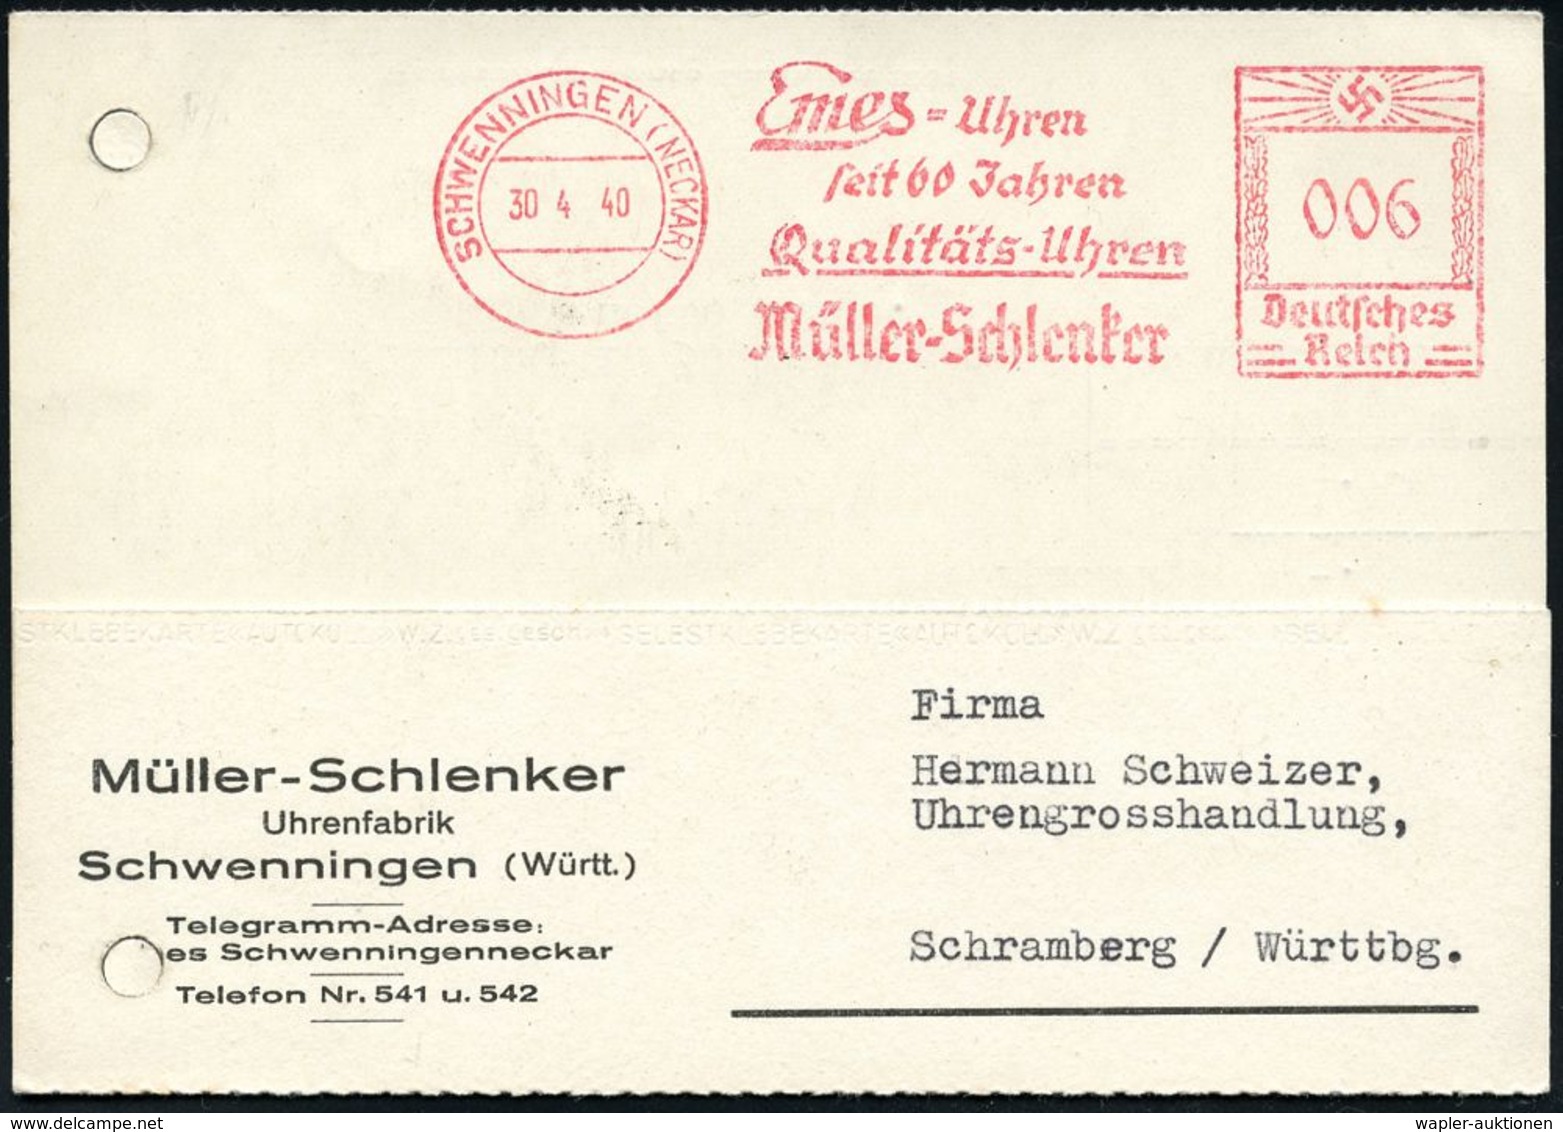 UHR / ZEITMESSUNG : SCHWENNINGEN (NECKAR)/ Emes-Uhren/ Seit 60 Jahren/ ..Müller-Schlenker 1940 (30.4.) Jubil.-AFS , Klar - Horlogerie